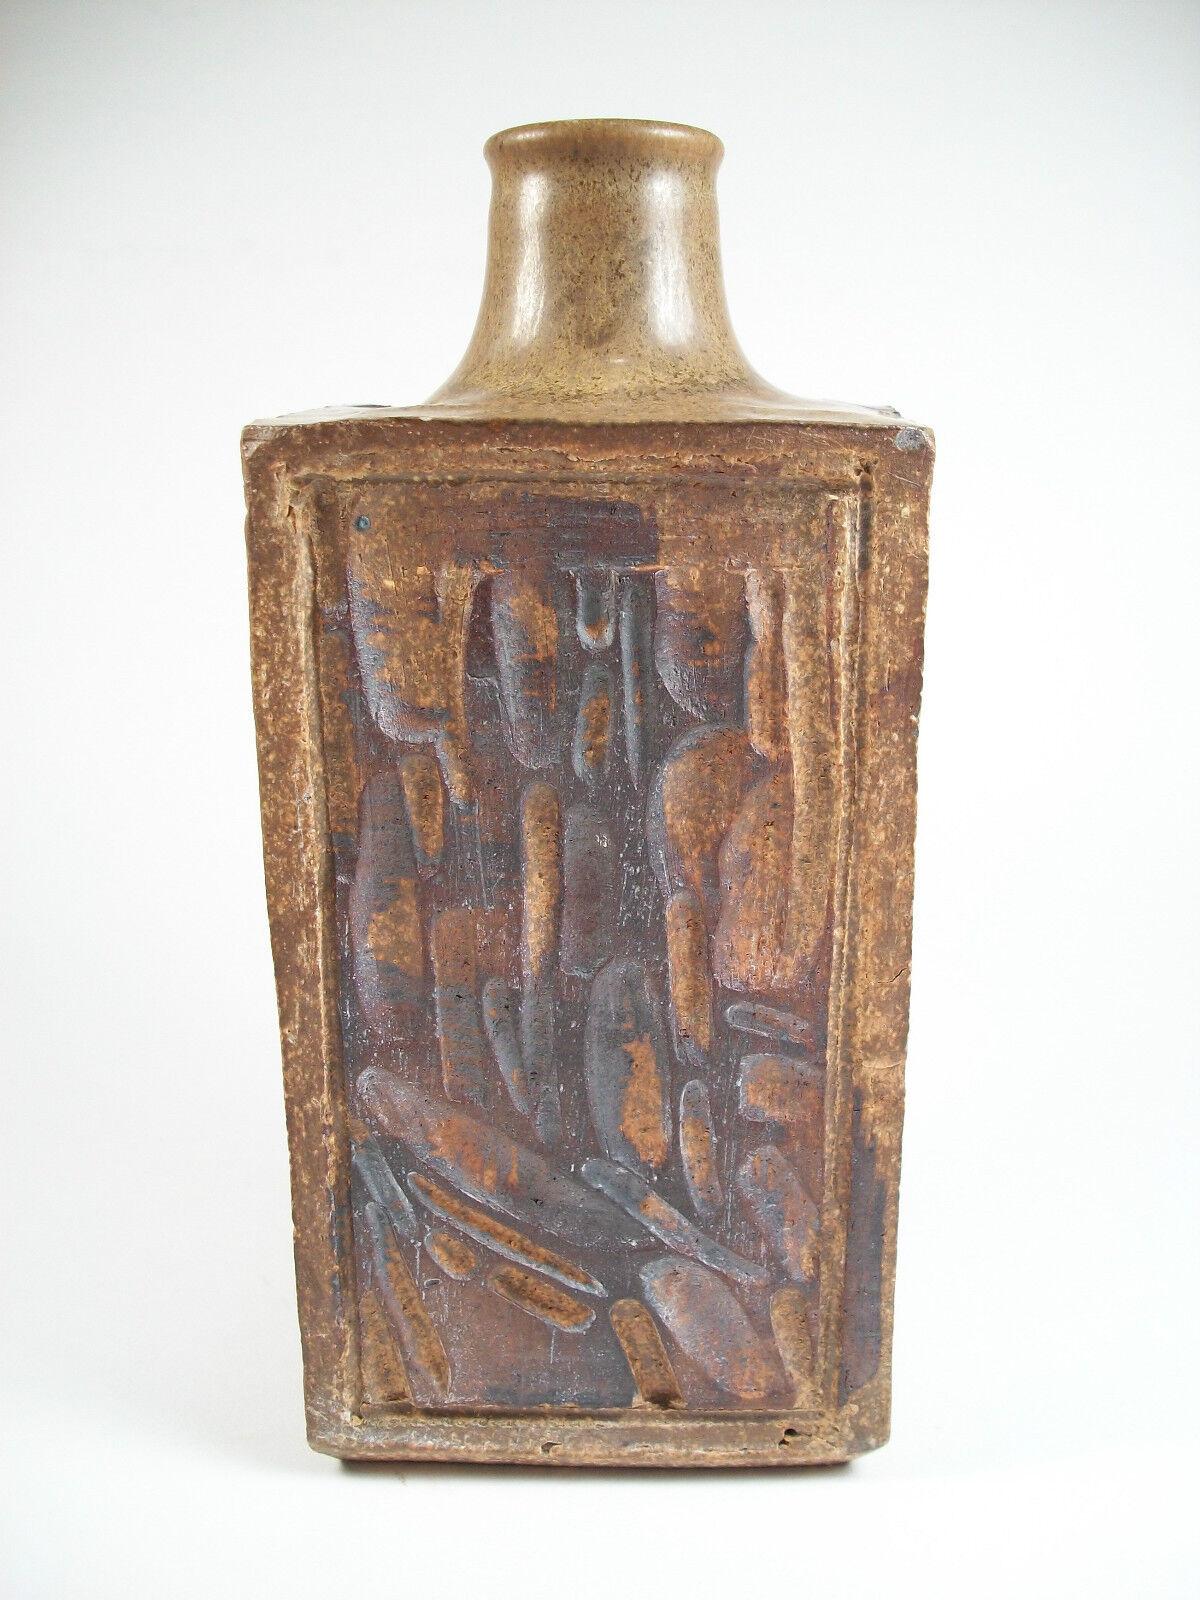 Unglazed VILT - Cut-Sided & Glazed Stoneware Studio Pottery Vase - Signed - 20th Century For Sale